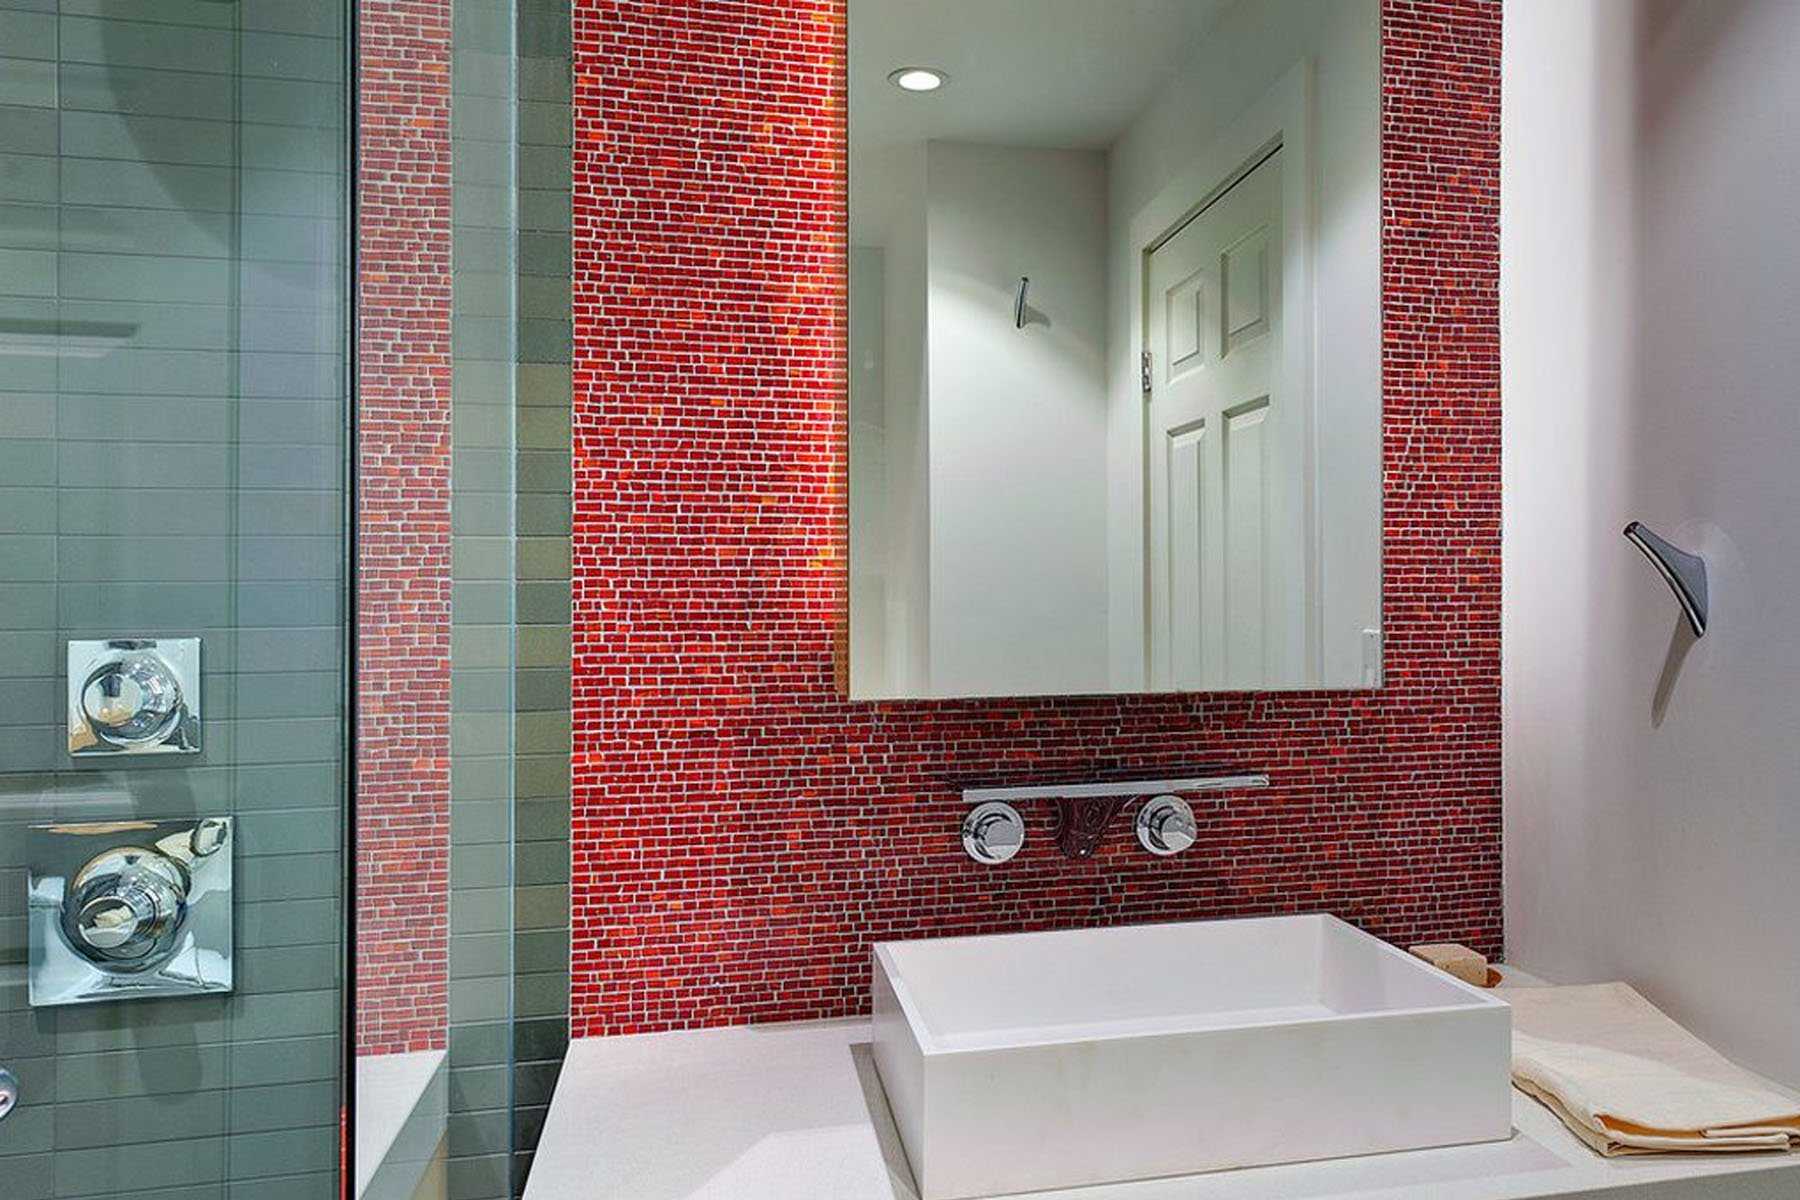 Использование плитки-мозаики в дизайне ванной комнаты: 67 фото красивейших вариантов отделки стен и пола